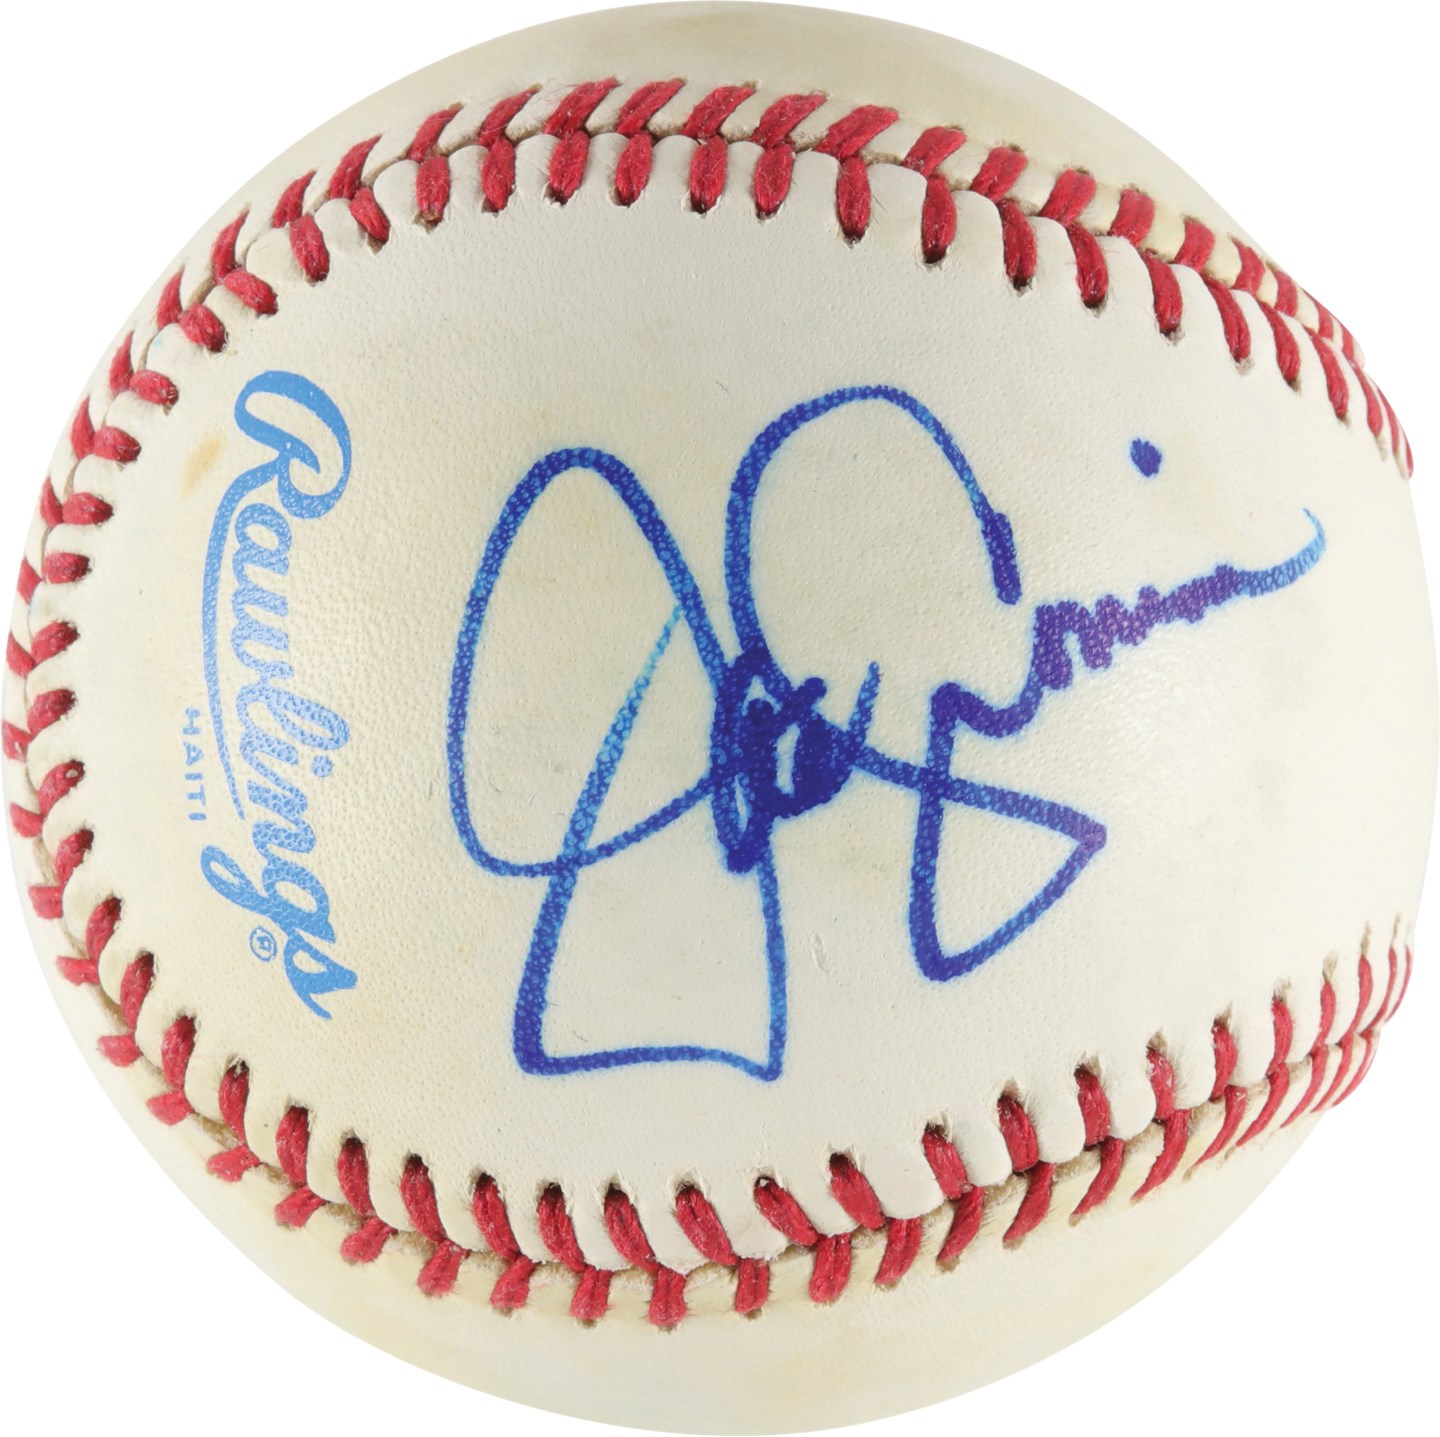 Joe Cronin Single-Signed Baseball (PSA)